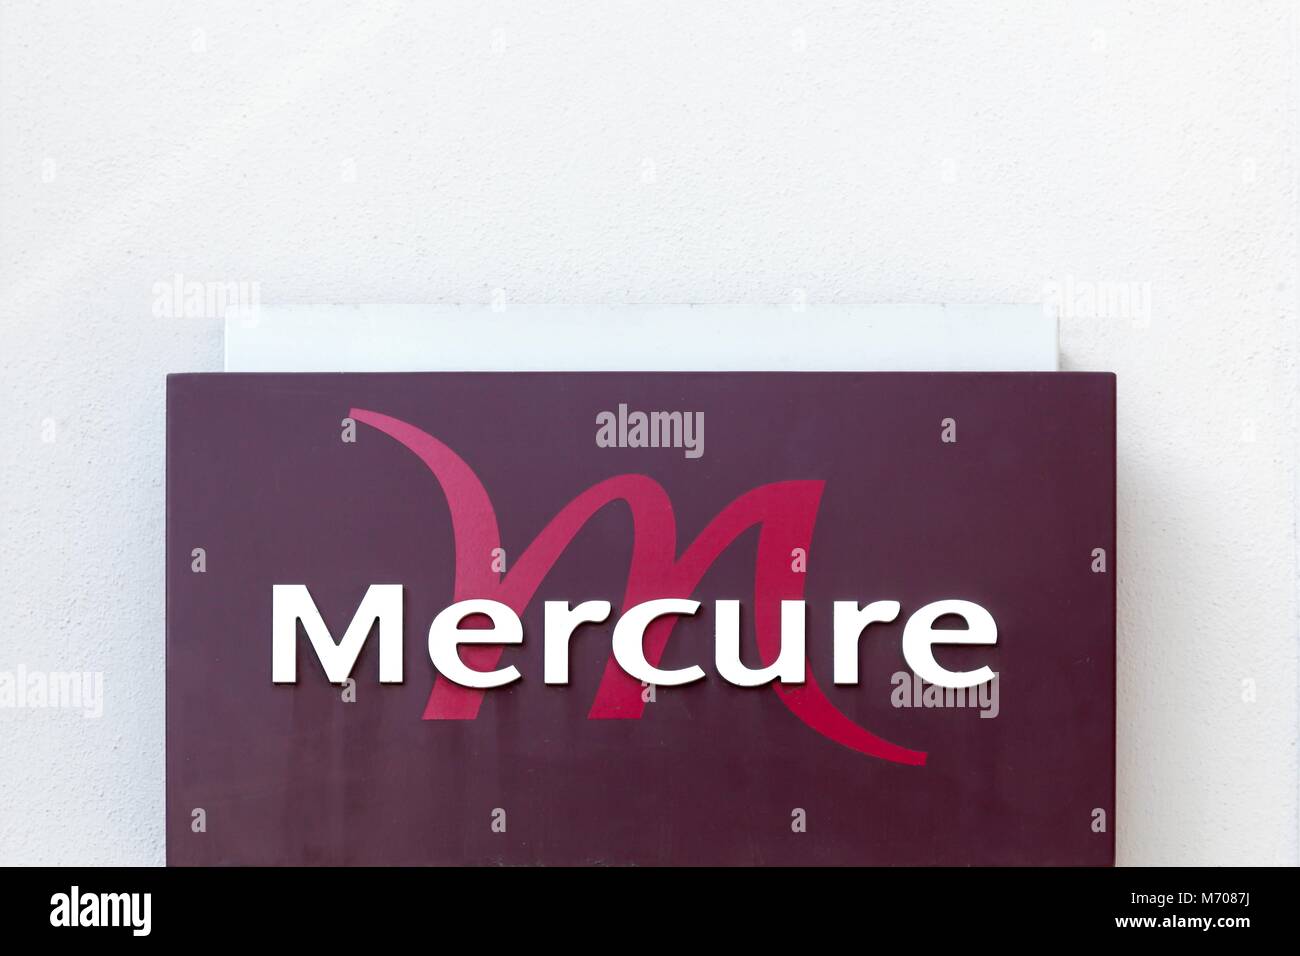 Sennece, Frankreich - 15 April 2016: Mercure Hotel Zeichen an der Wand. Das Mercure Hotel ist ein internationales Hotel der Accor Gruppe Stockfoto